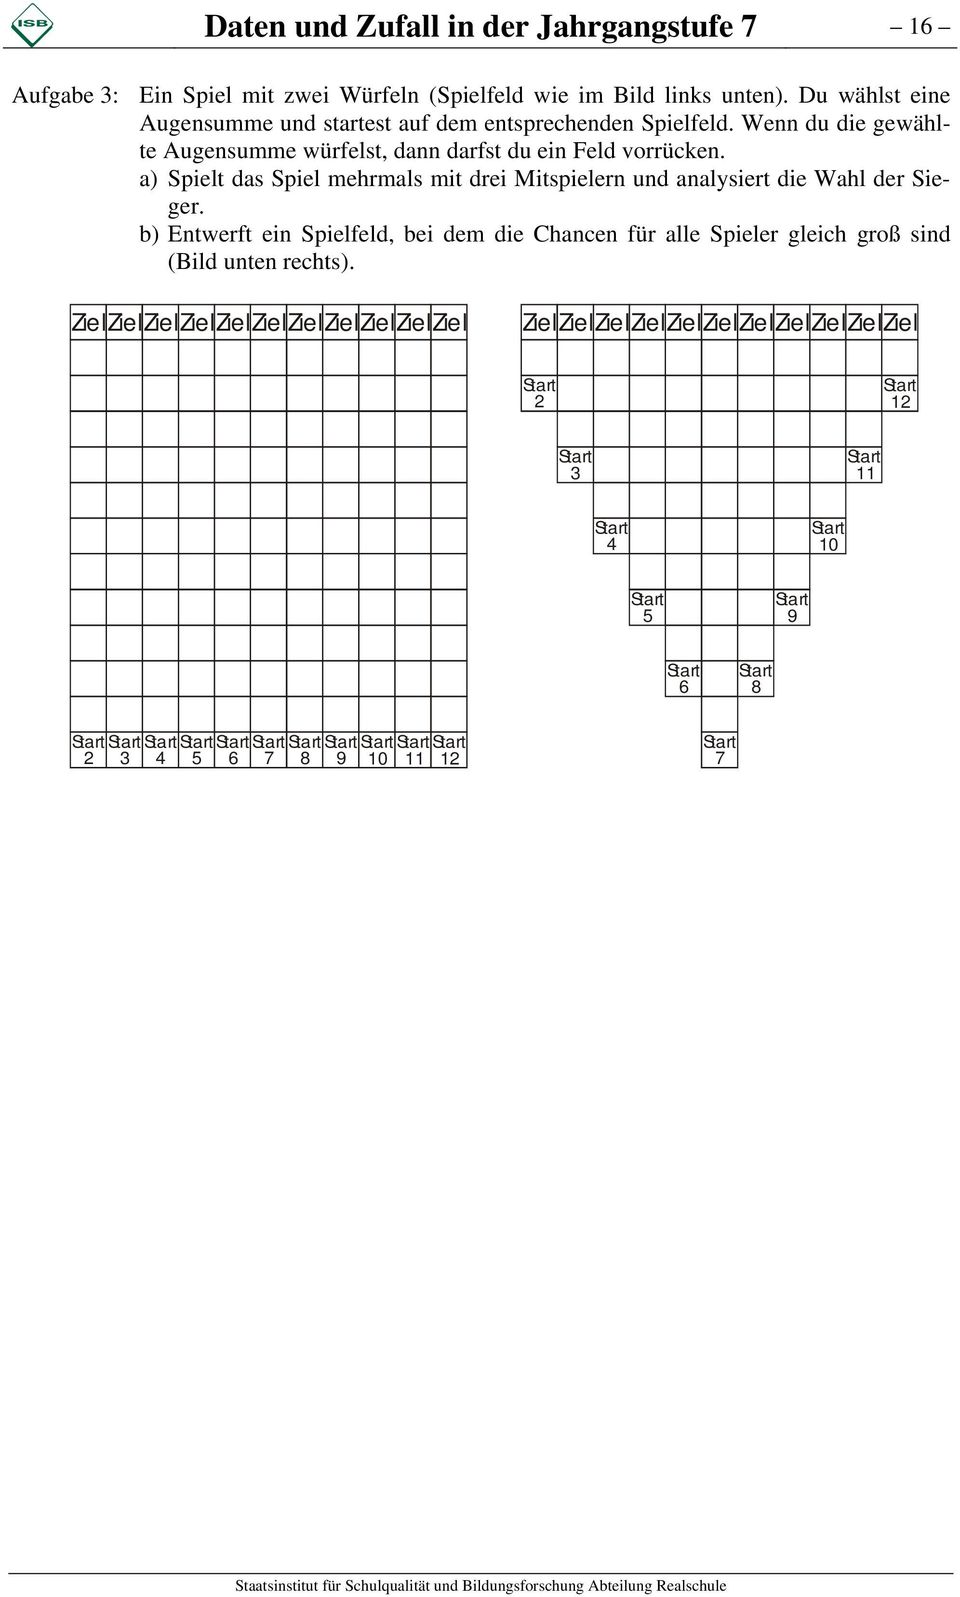 b) Entwerft ein Spielfeld, bei dem die Chancen für alle Spieler gleich groß sind (Bild unten rechts).